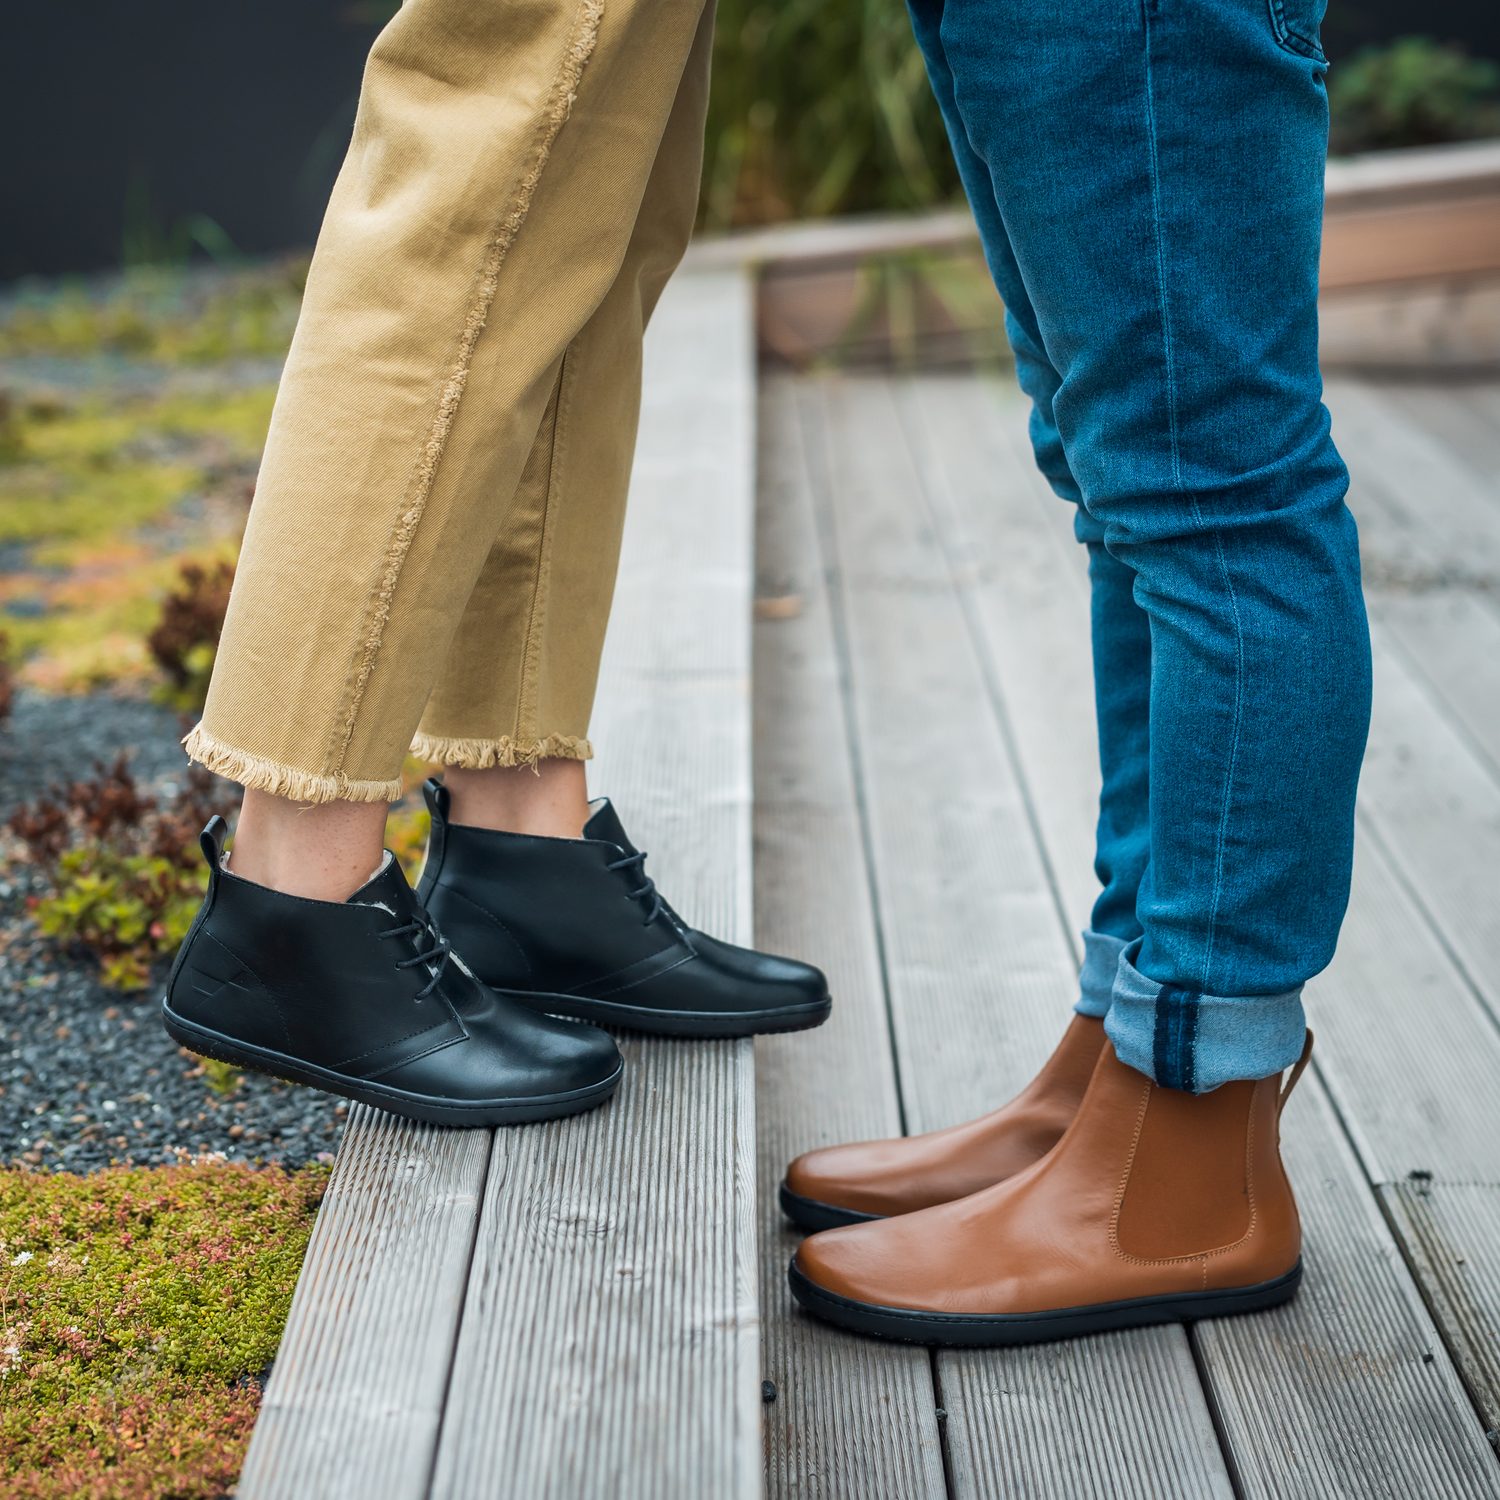 naBOSo – Barefooty a zima – je v tenké podrážce skutečně teplo? – Zažijte  pohodlí barefoot bot.